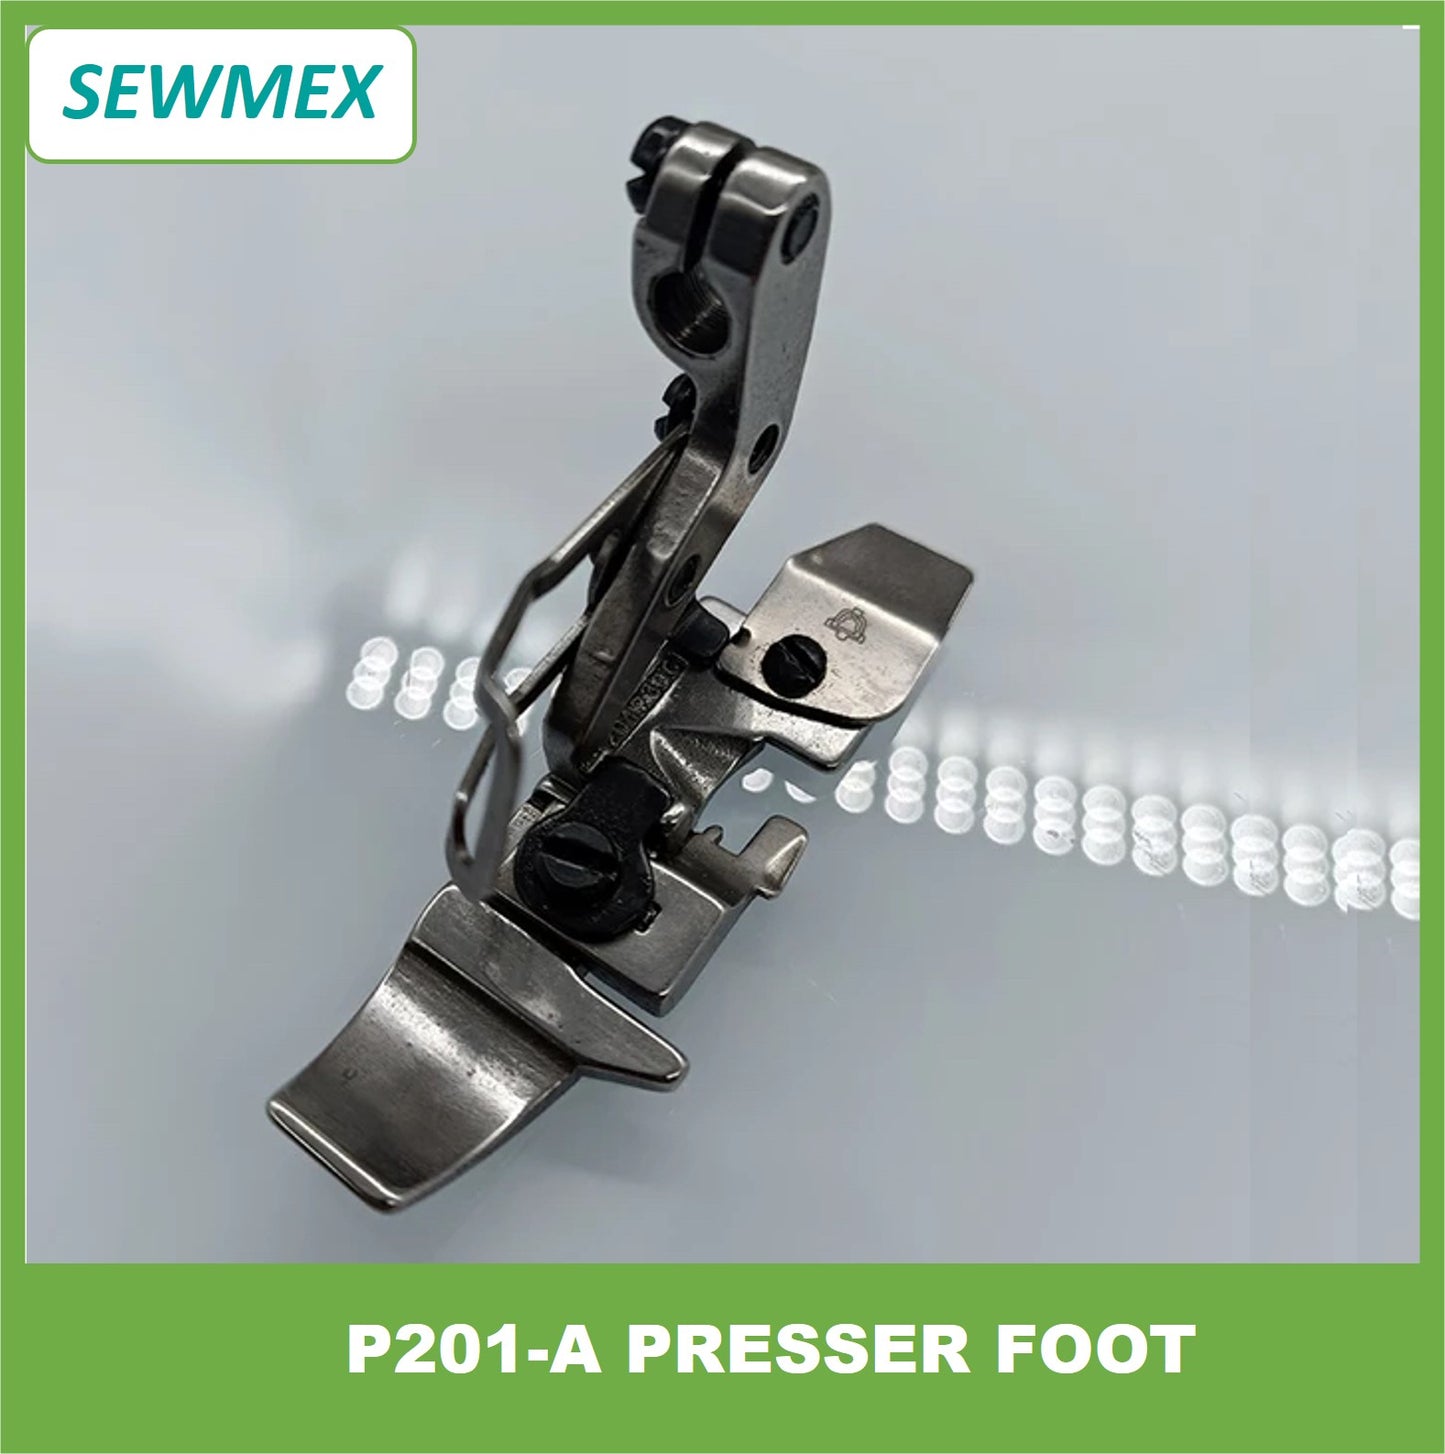 P201-A Presser Foot